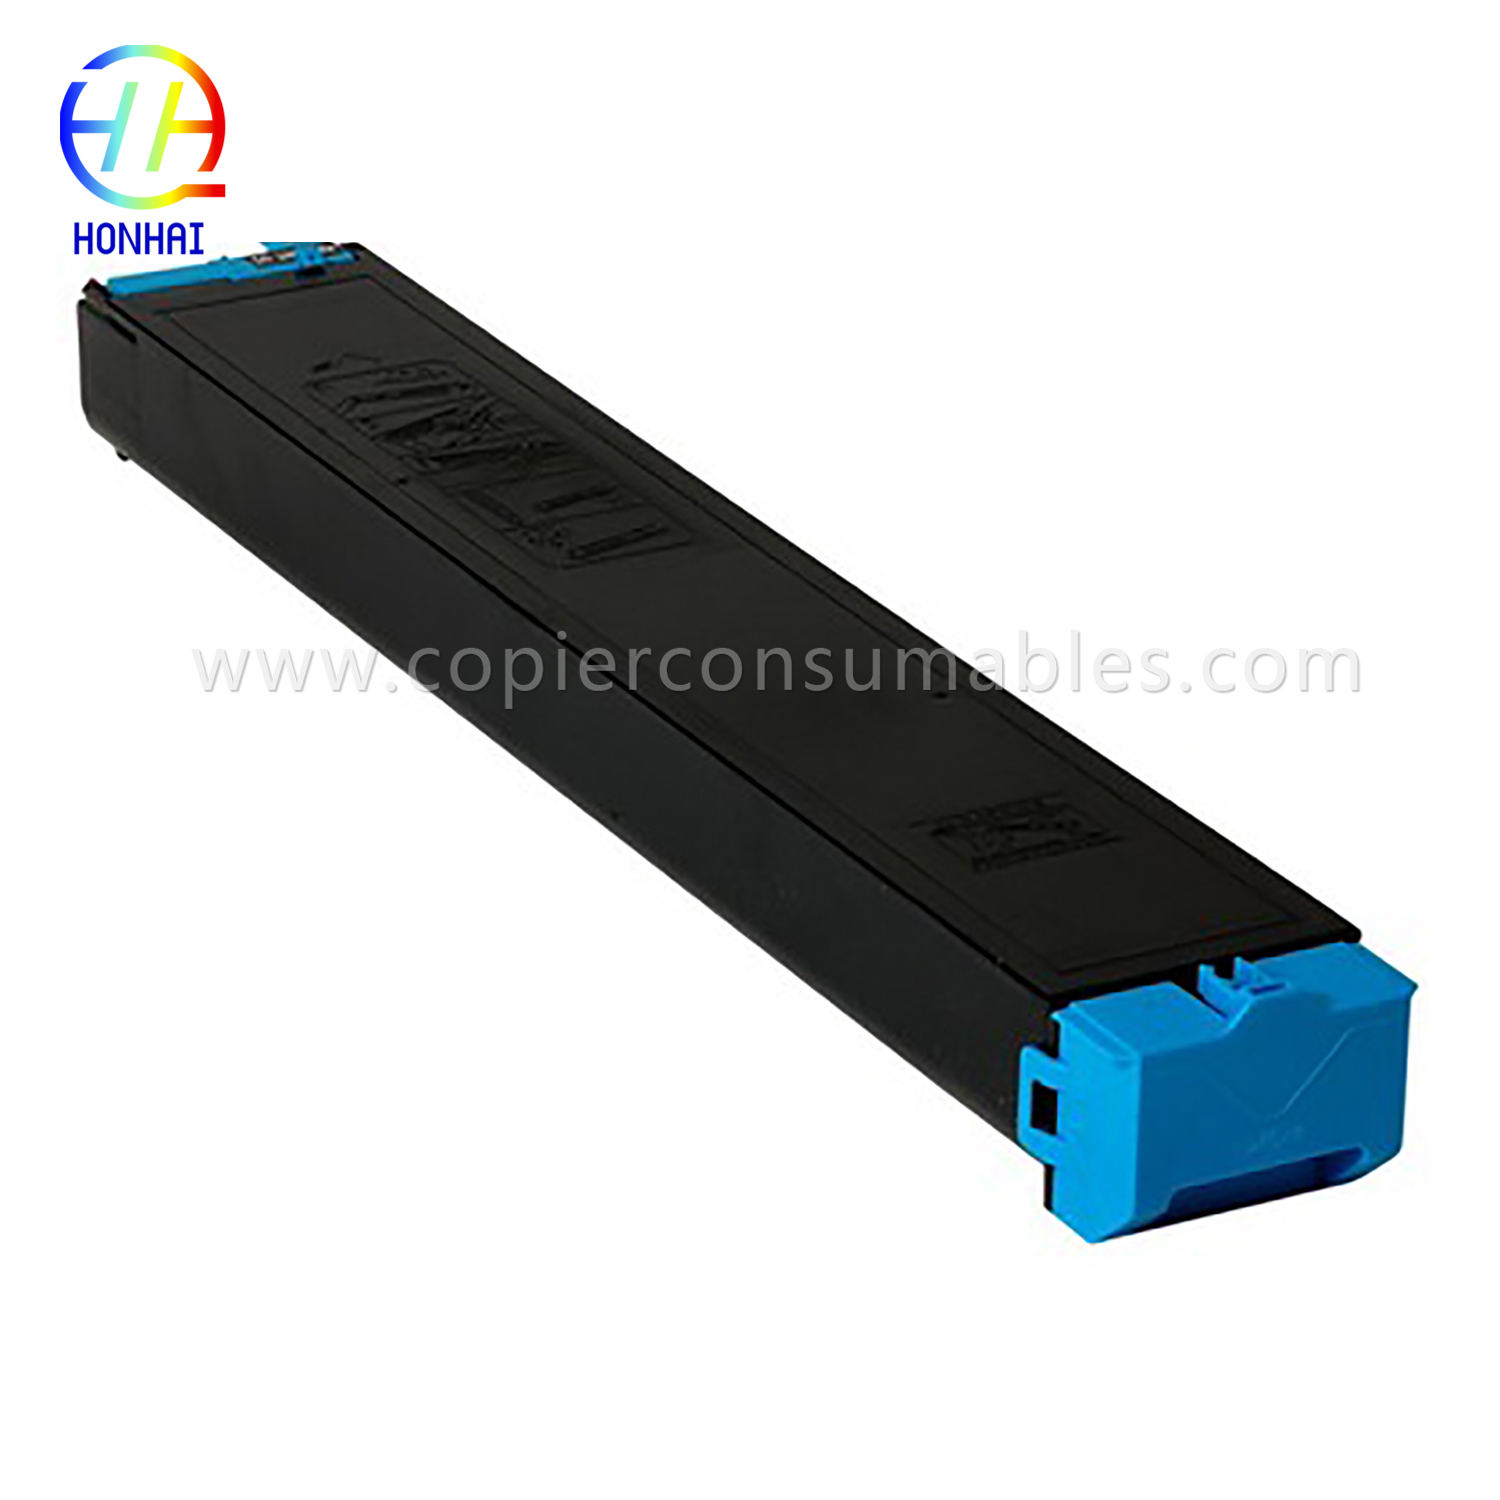 Toner Cartridge for Sharp Mx-2310u 2616n 3111u 3116n (MX-23FT)